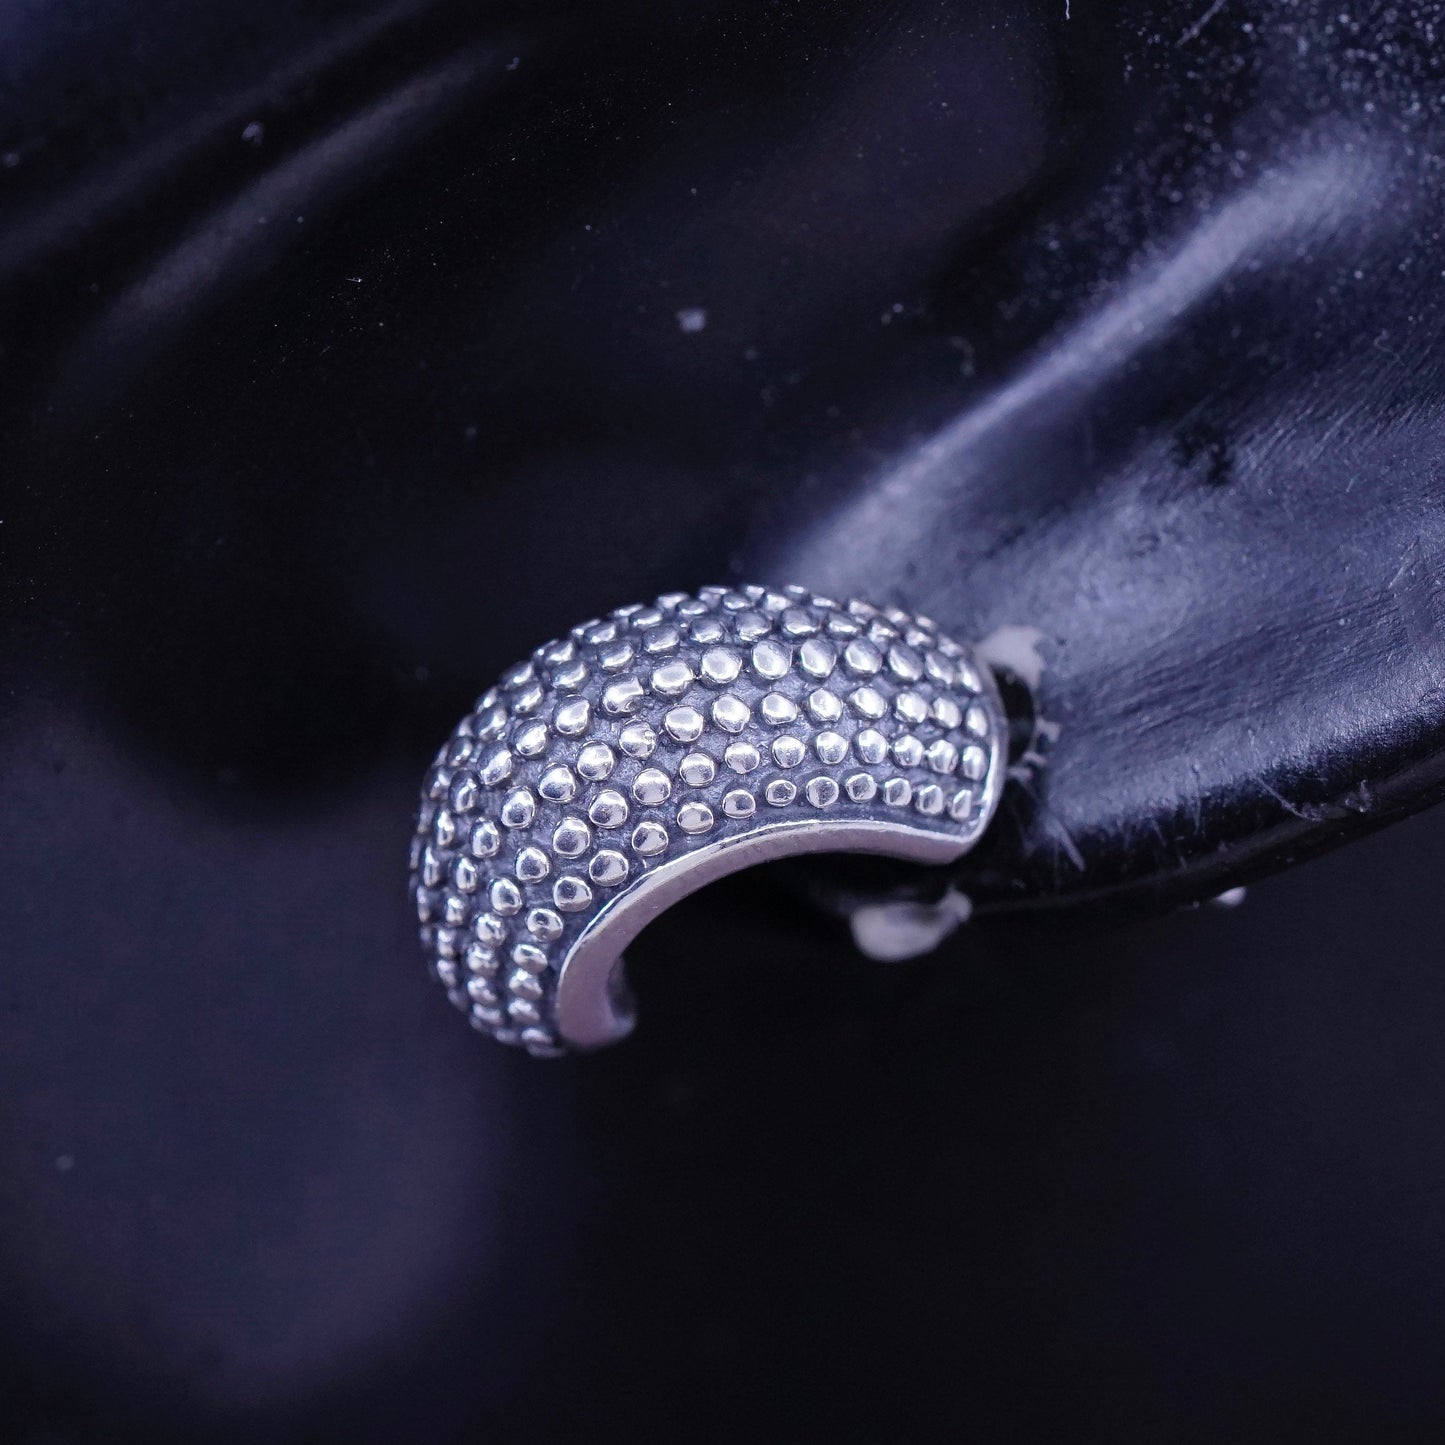 0.5”, vintage Sterling silver handmade earrings, 925 textured hoops